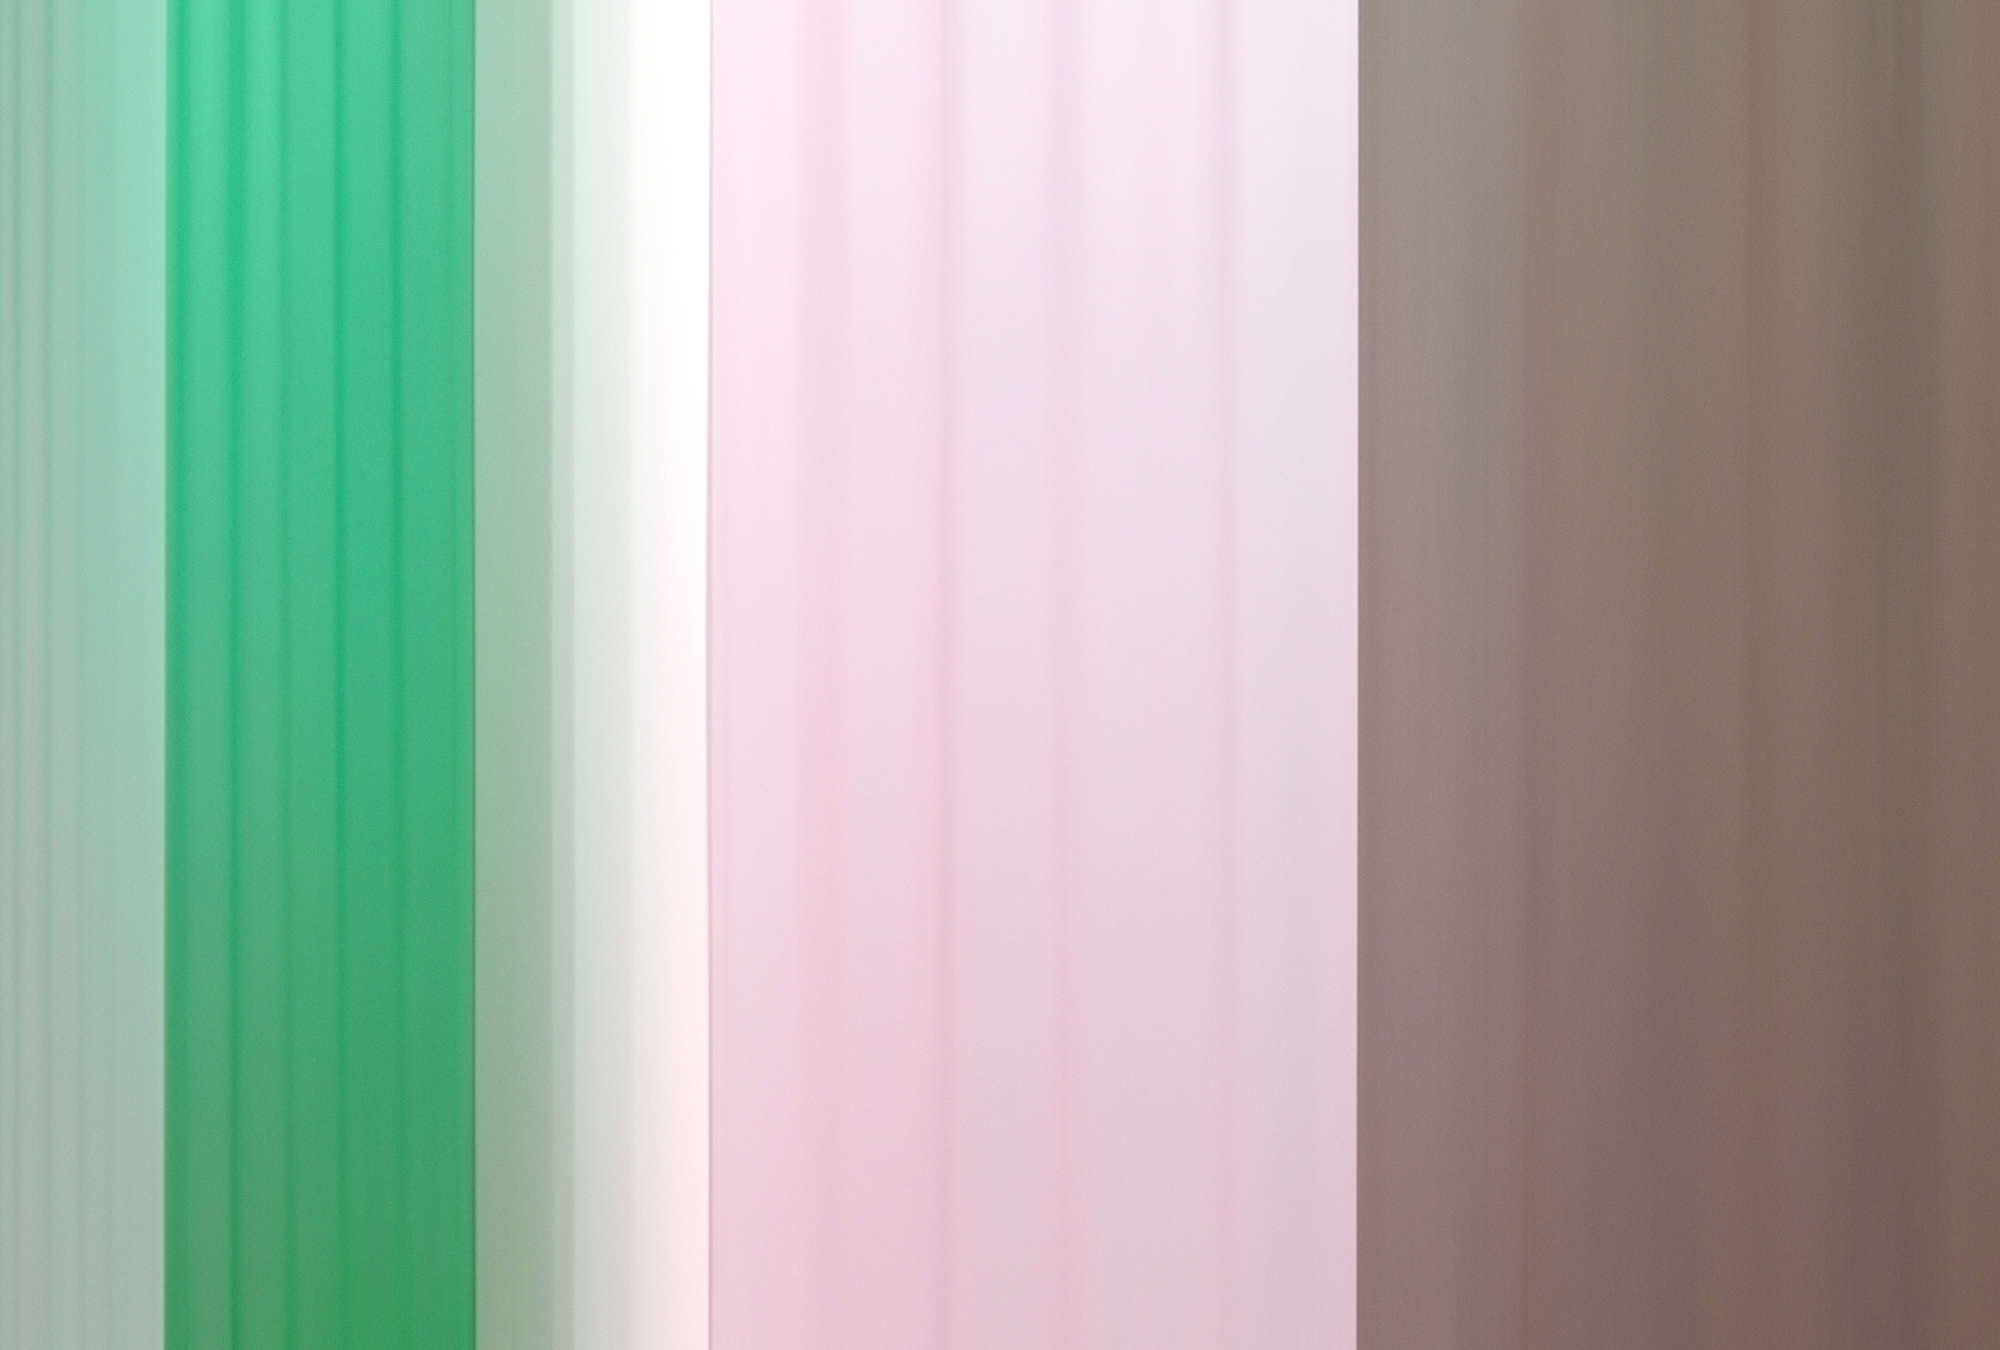             papier peint en papier »co-colores 1« - dégradé de couleurs à rayures - vert rose, marron | Intissé lisse, légèrement nacré
        